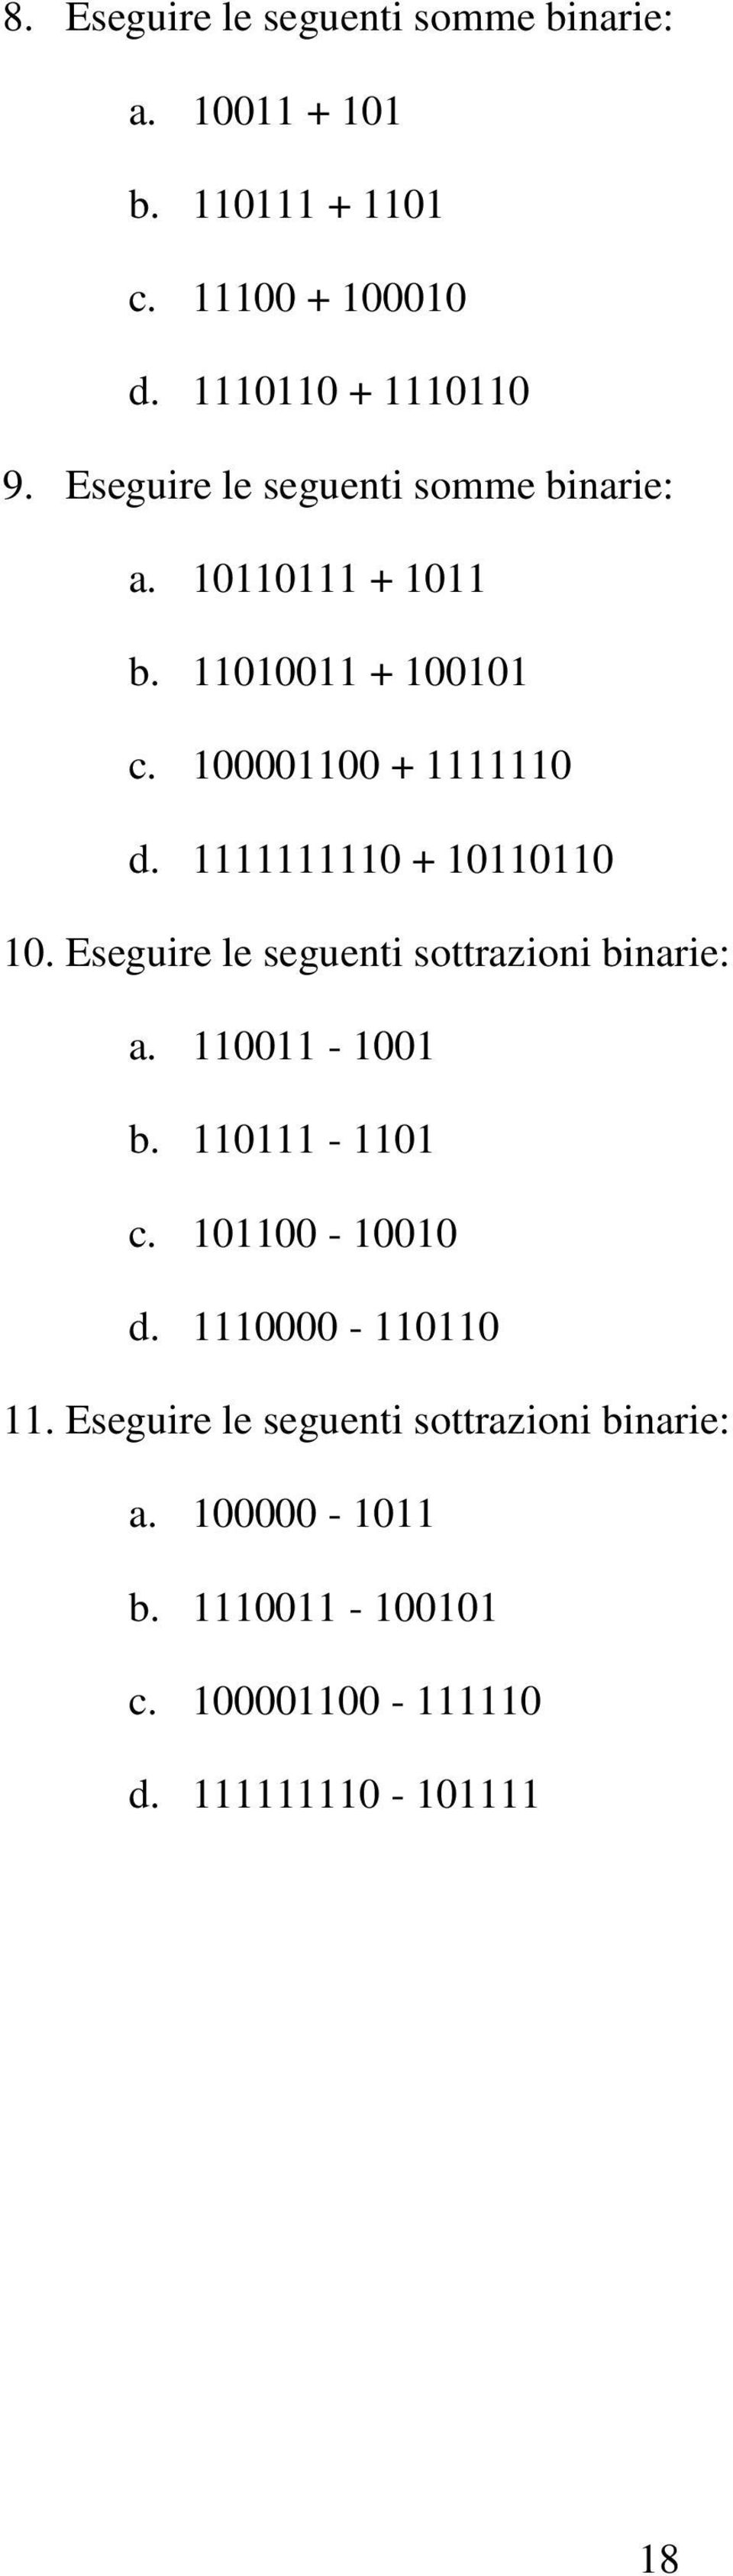 . Eseguire le seguenti sottrazioni binarie: a. - b. - c.